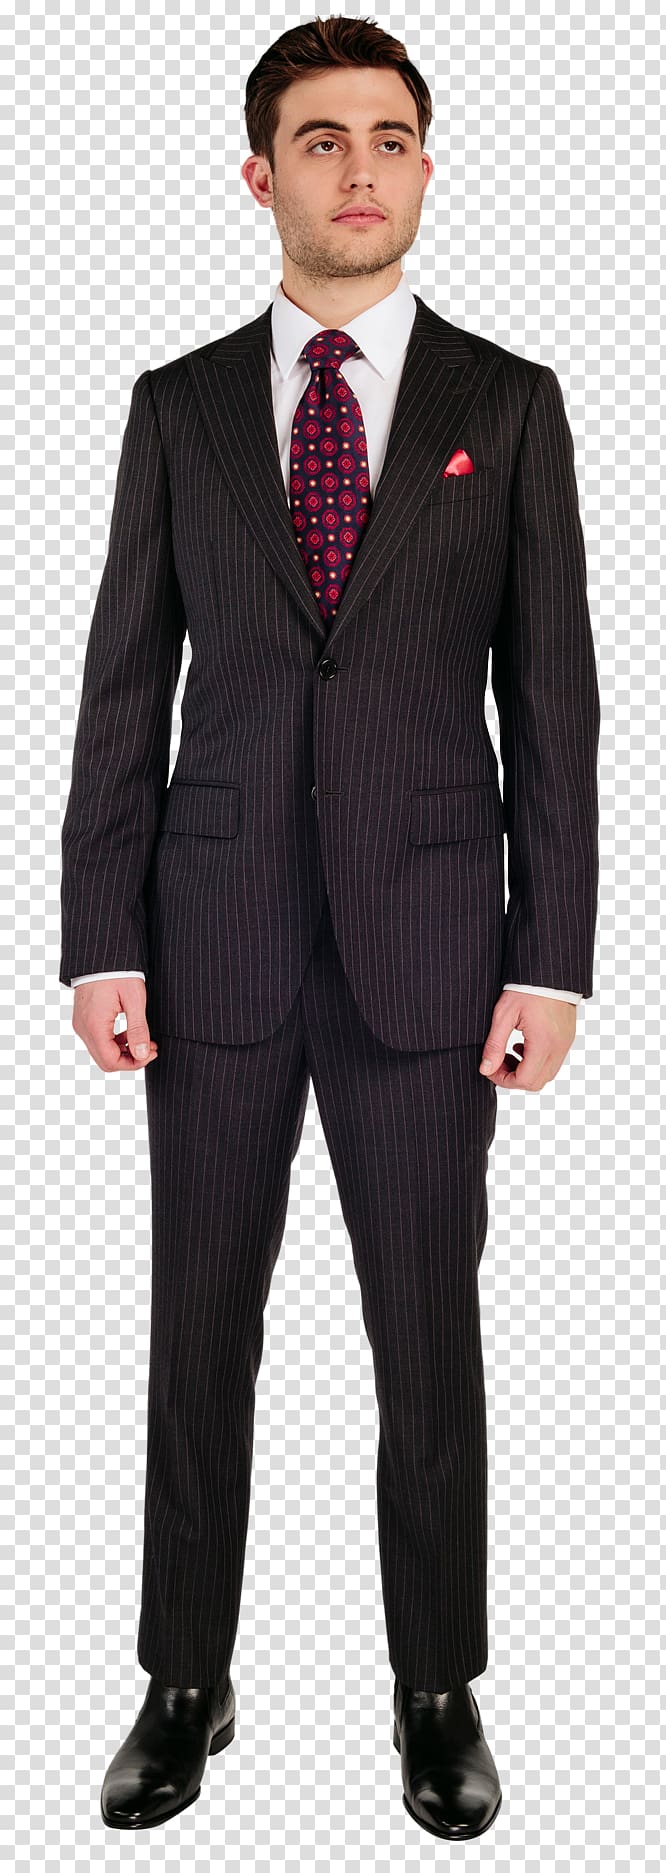 Suit Sport coat Clothing Tuxedo, attire transparent background PNG clipart